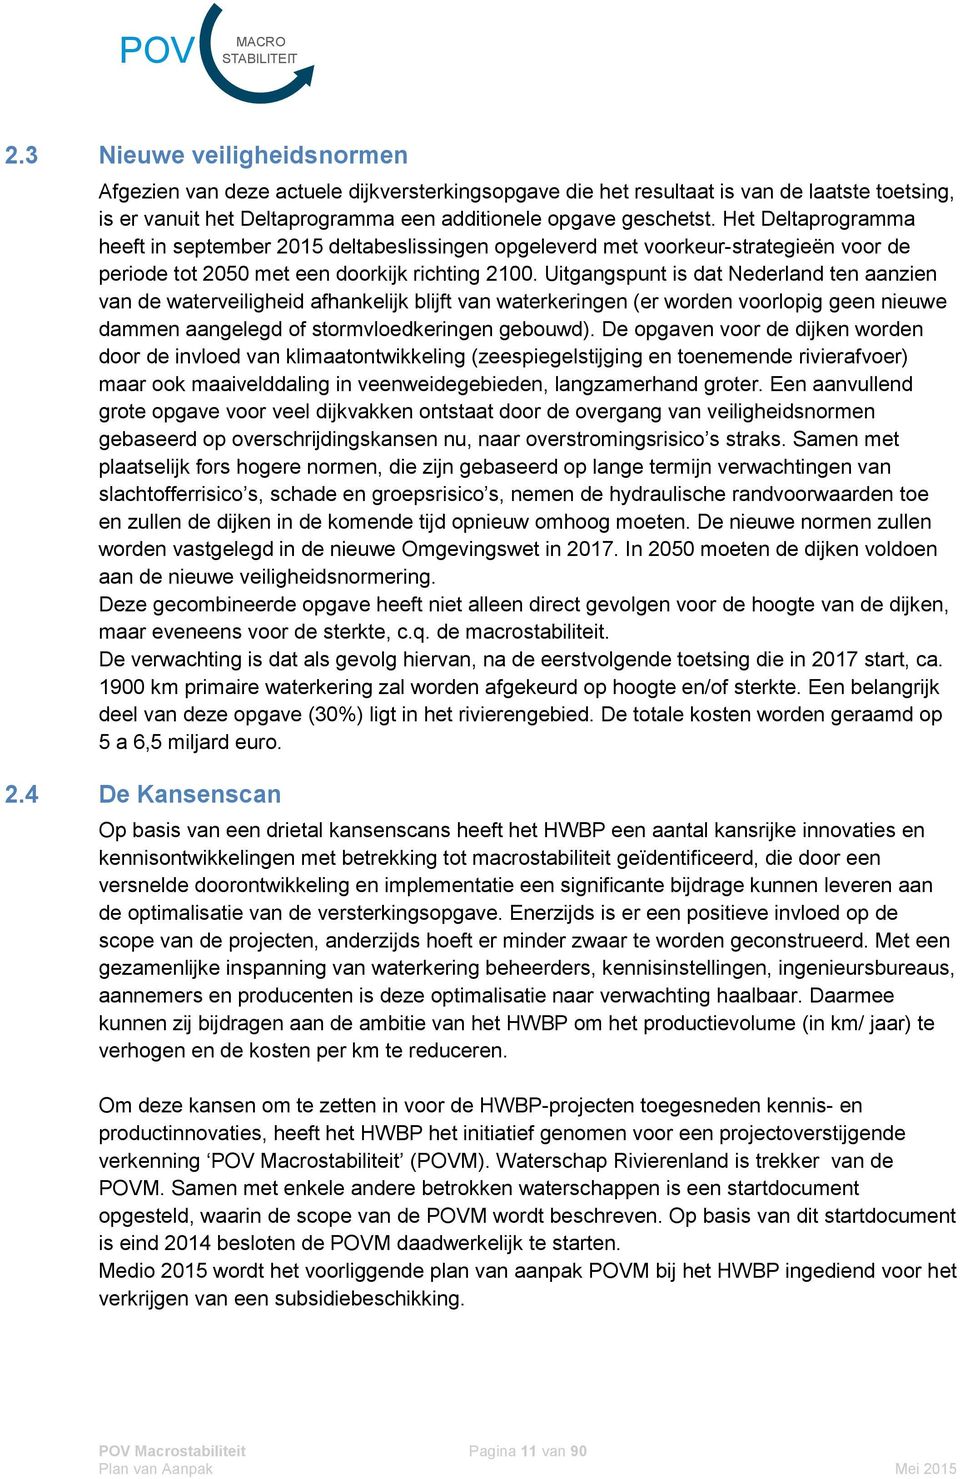 Uitgangspunt is dat Nederland ten aanzien van de waterveiligheid afhankelijk blijft van waterkeringen (er worden voorlopig geen nieuwe dammen aangelegd of stormvloedkeringen gebouwd).